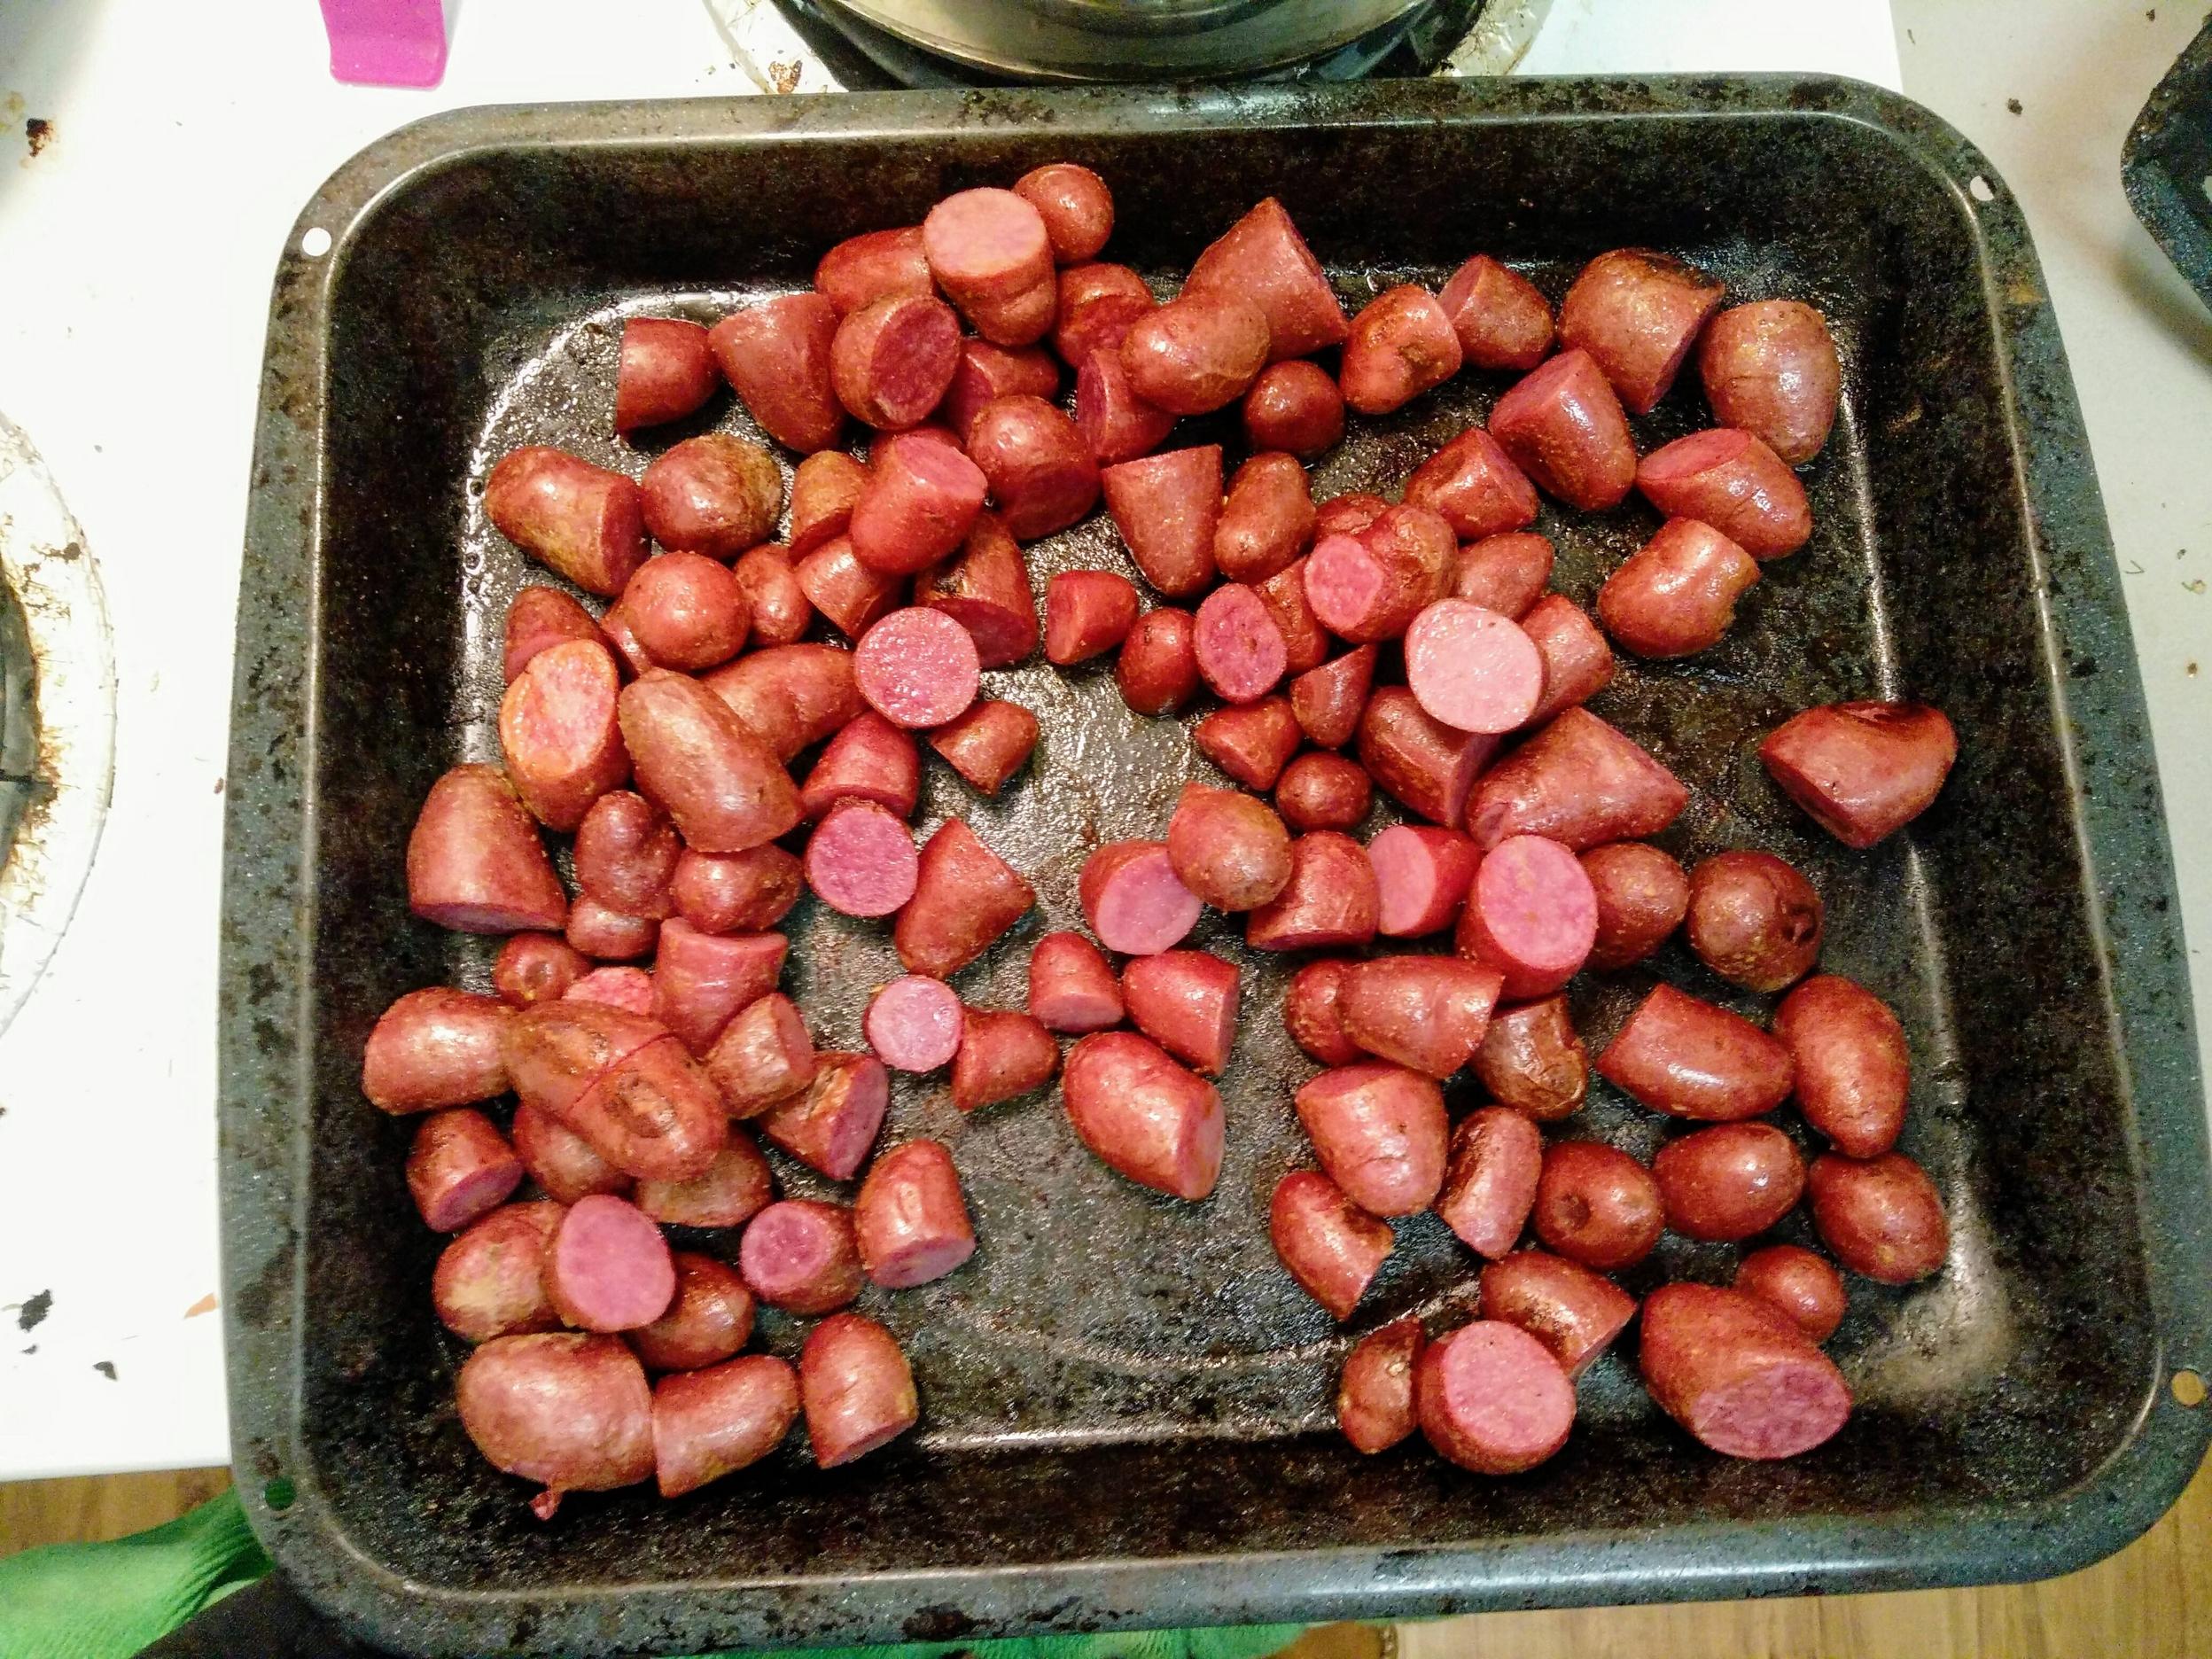 Acesti cartofi rosii seamana cu niste carnati taiati